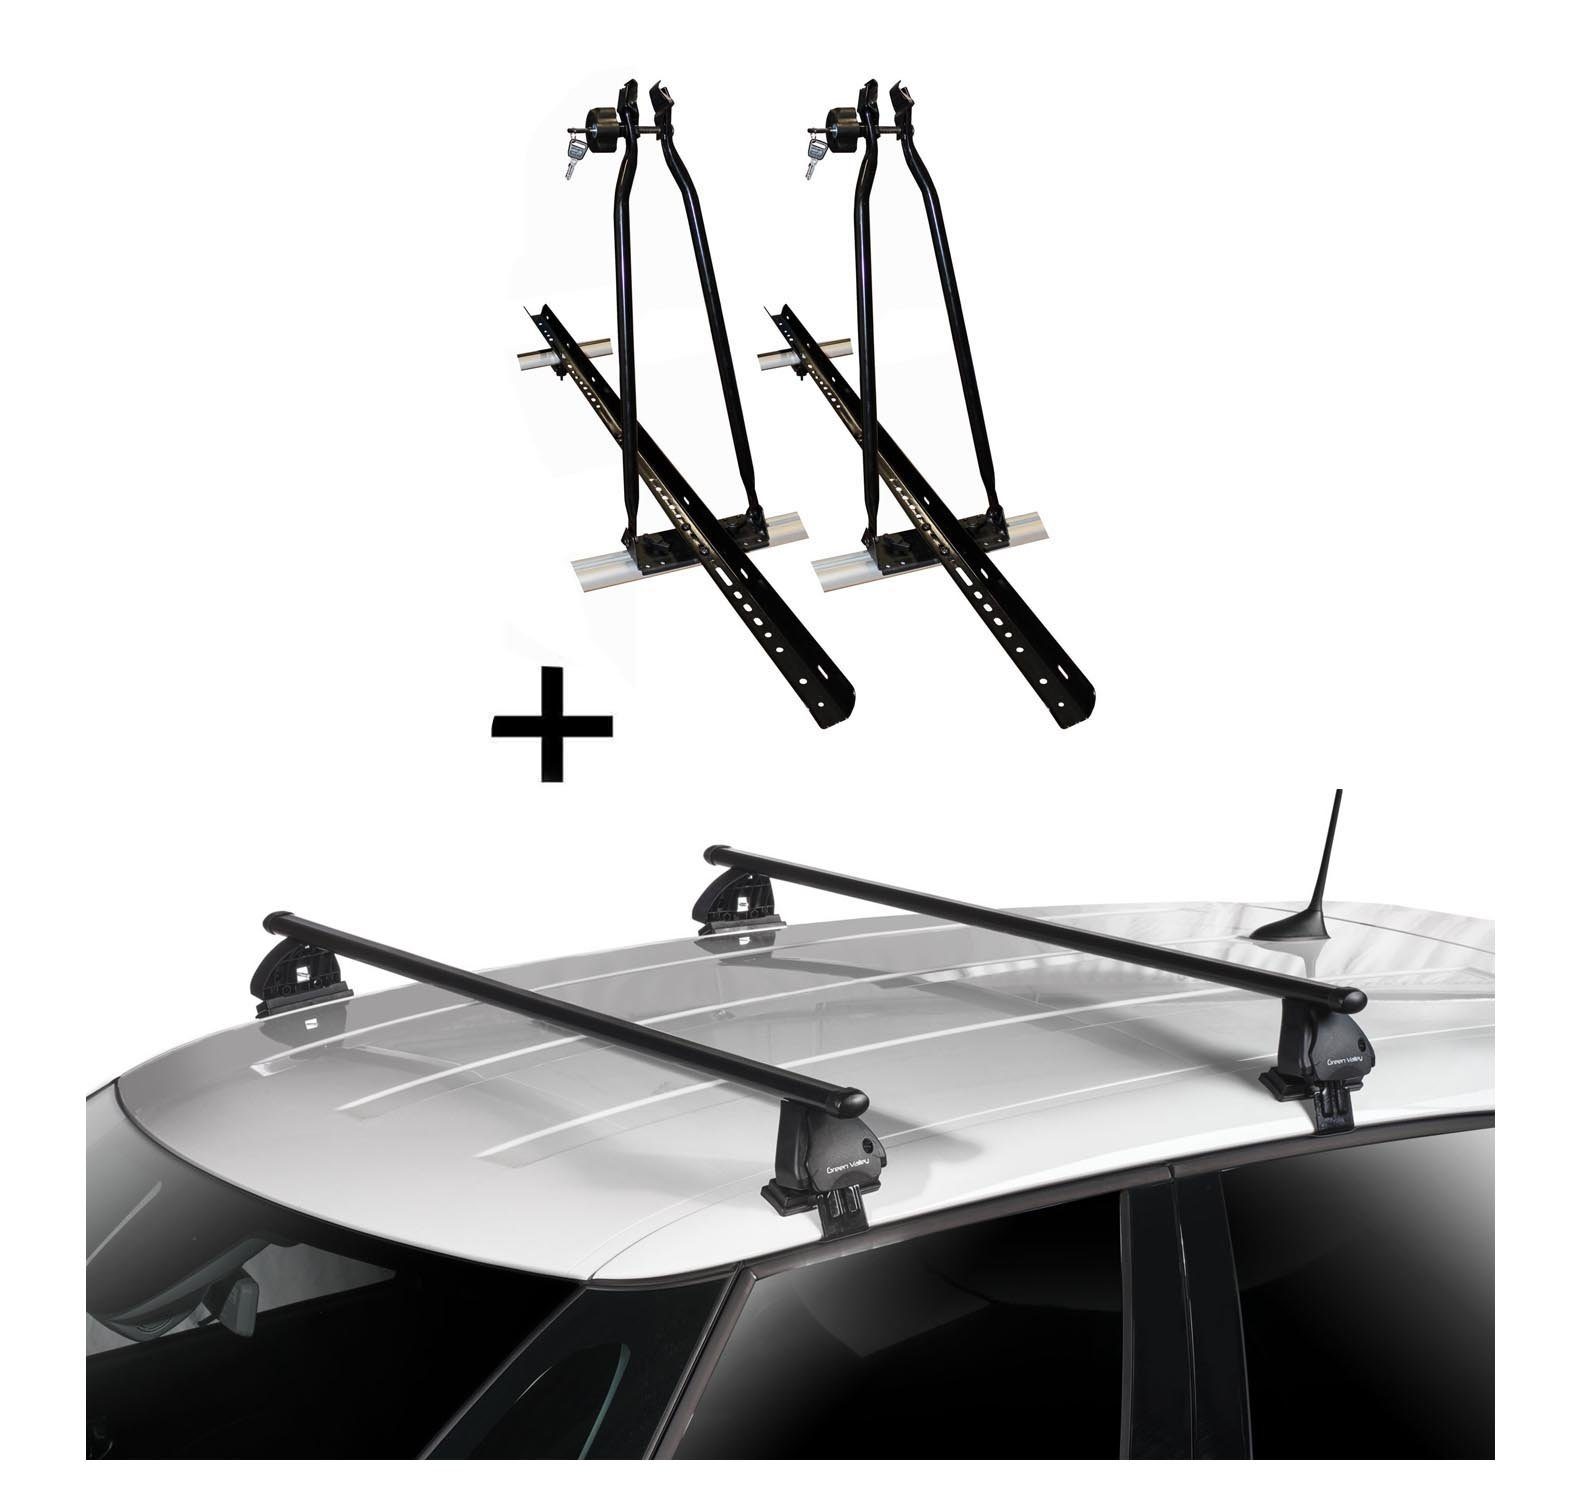 VDP Dachträger, 2x VDP Fahrradträger Dachfahrradträger + Dachträger VDP EVO Stahl kompatibel mit Opel Astra K 5 Türer ab 2015